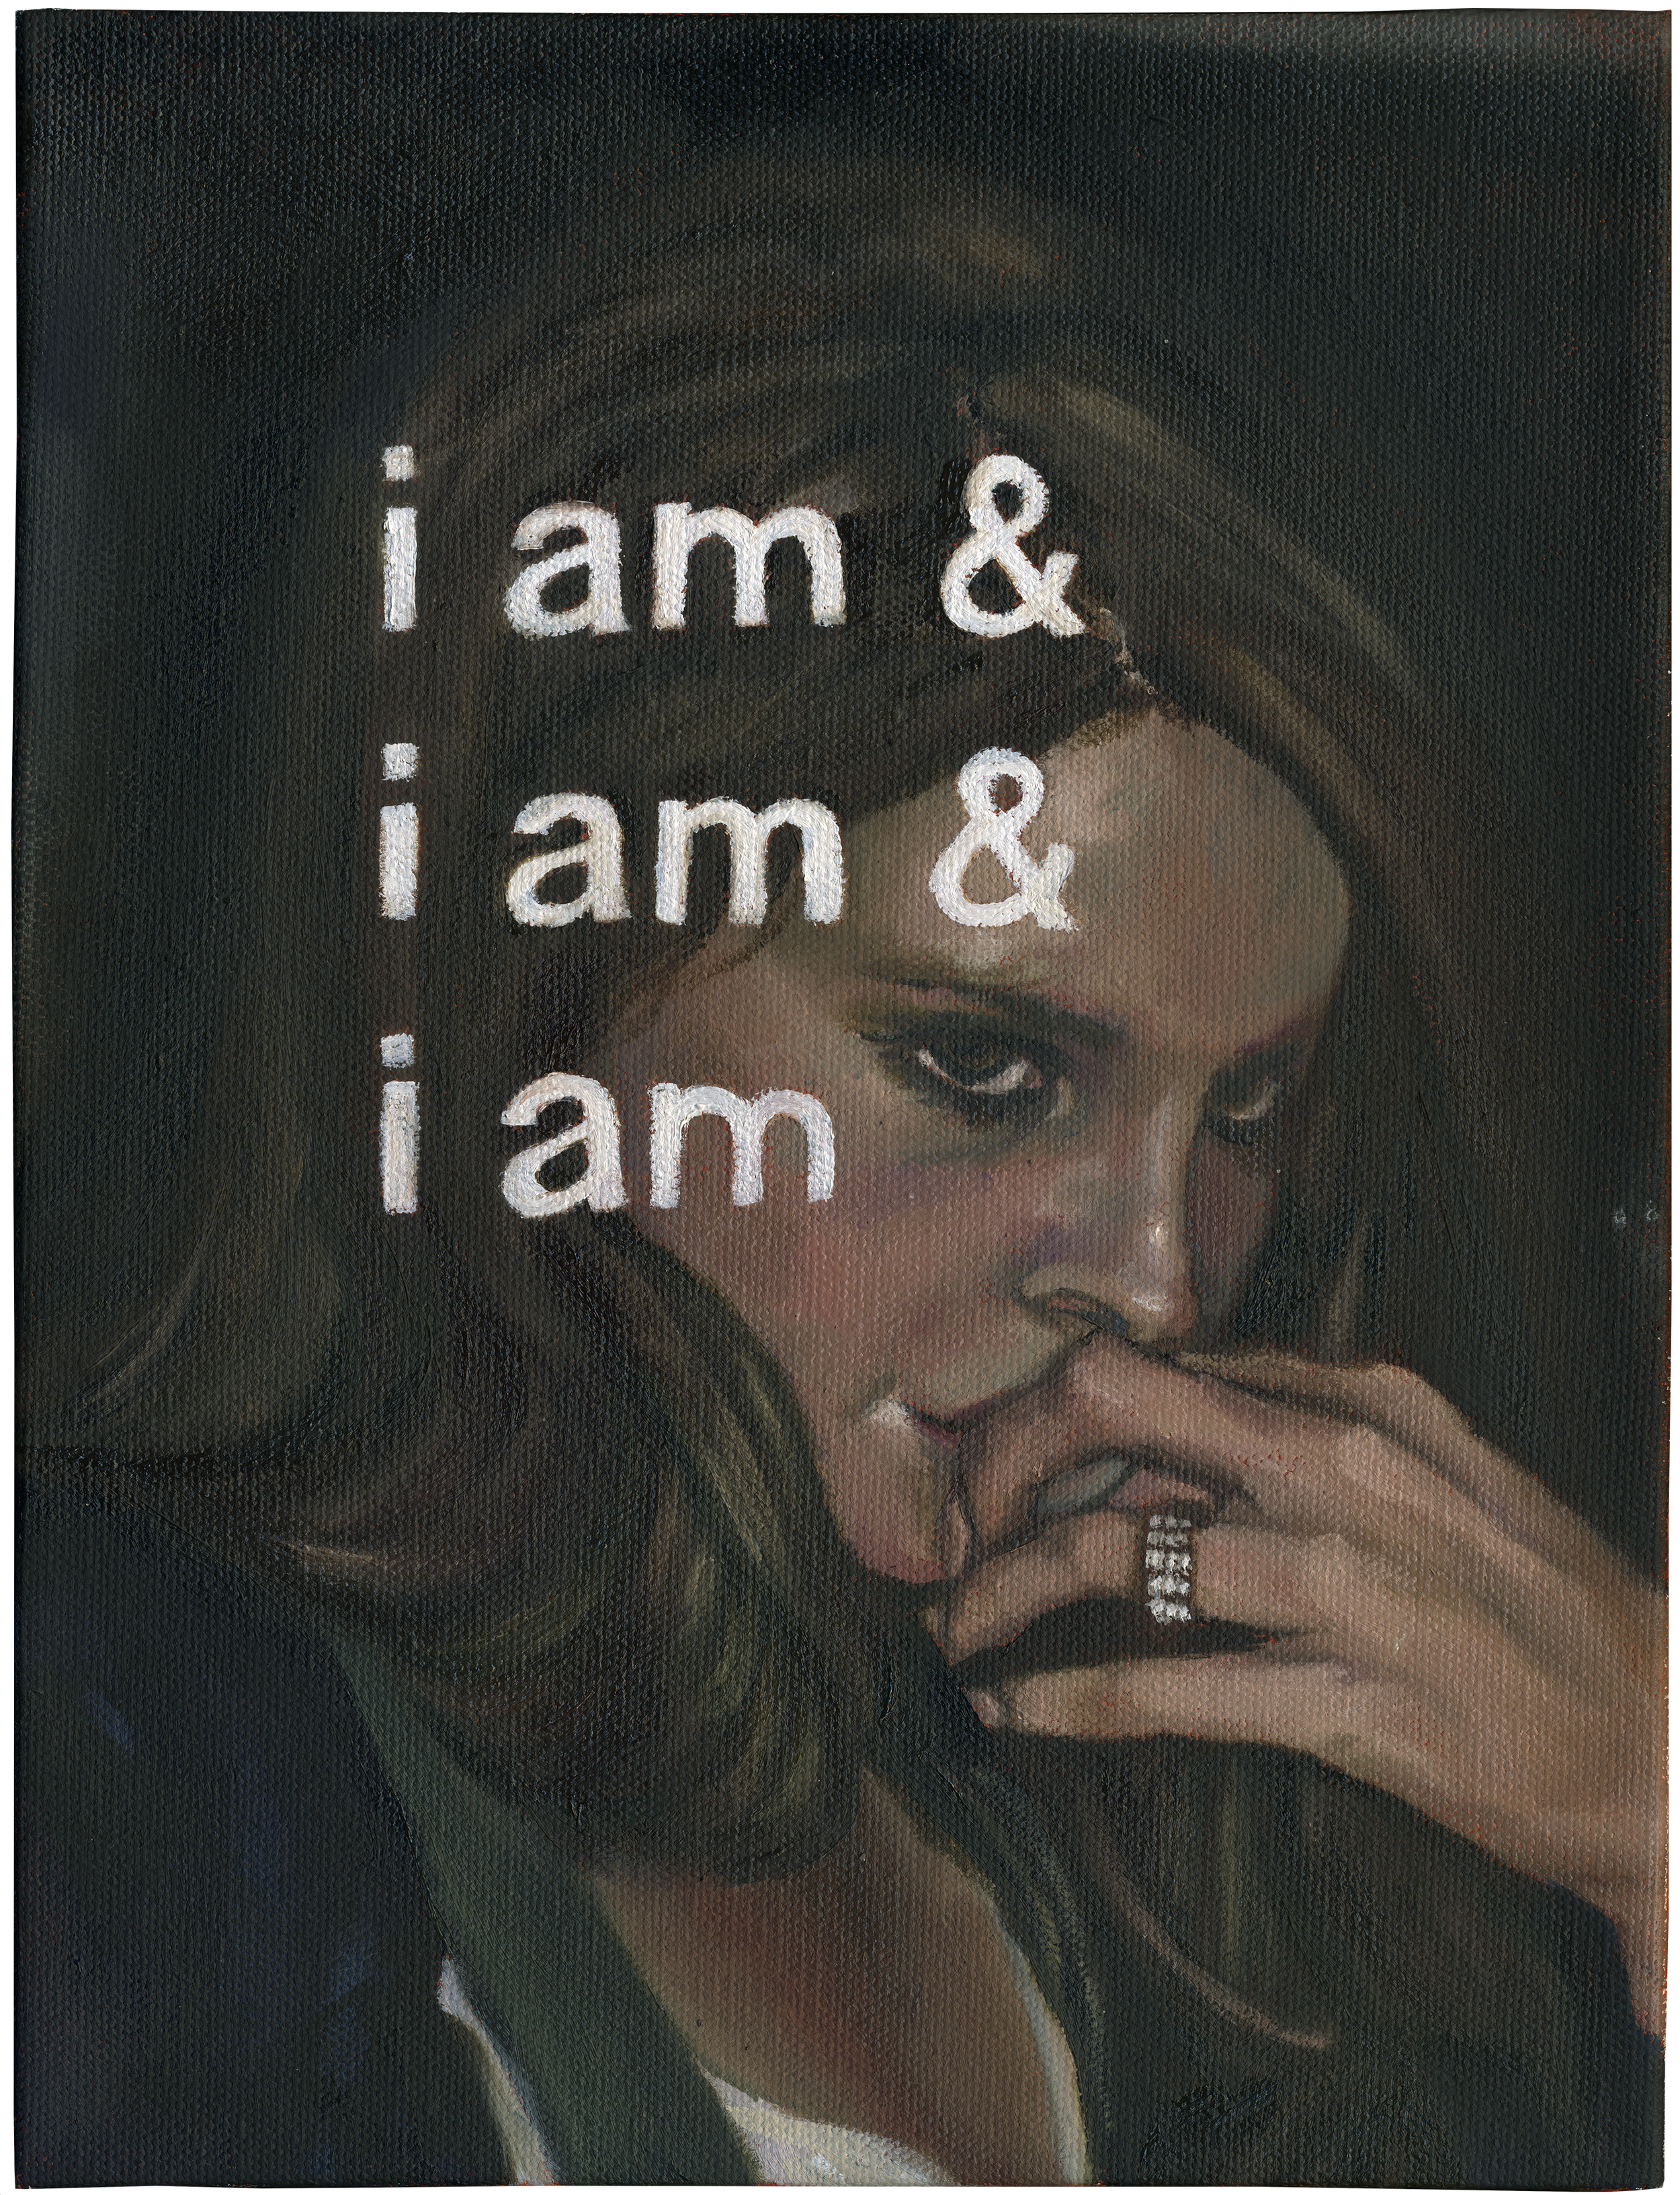 Lana iii (i am & i am & i am)